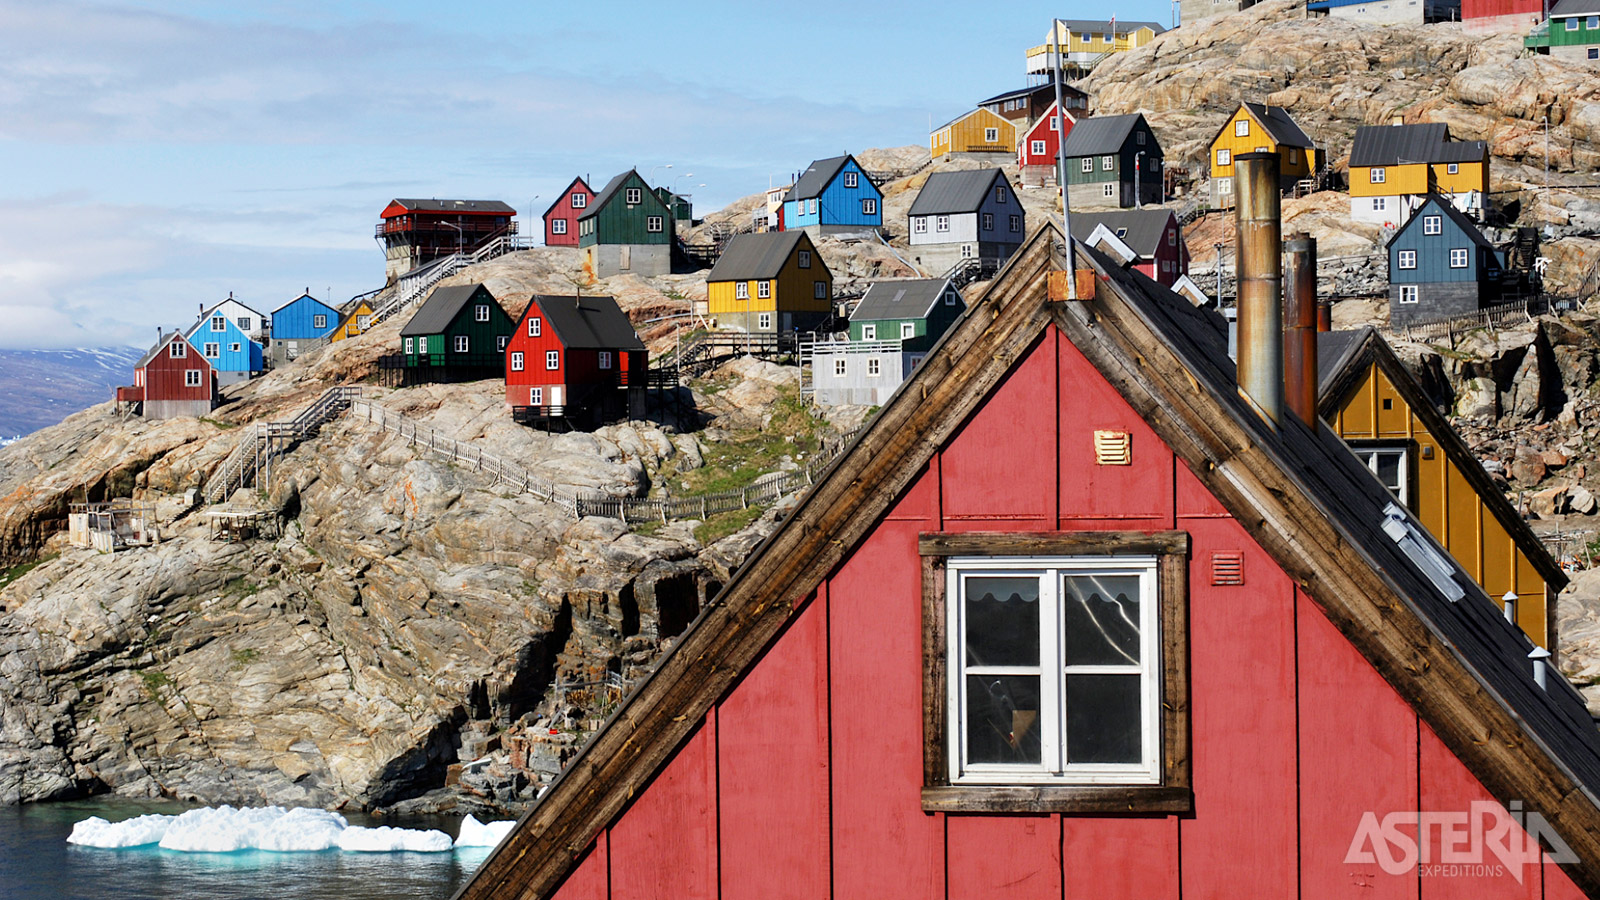 Ittoqqortoormiit betekent bewoners van het grote huis in het Oost-Groenlands dialect